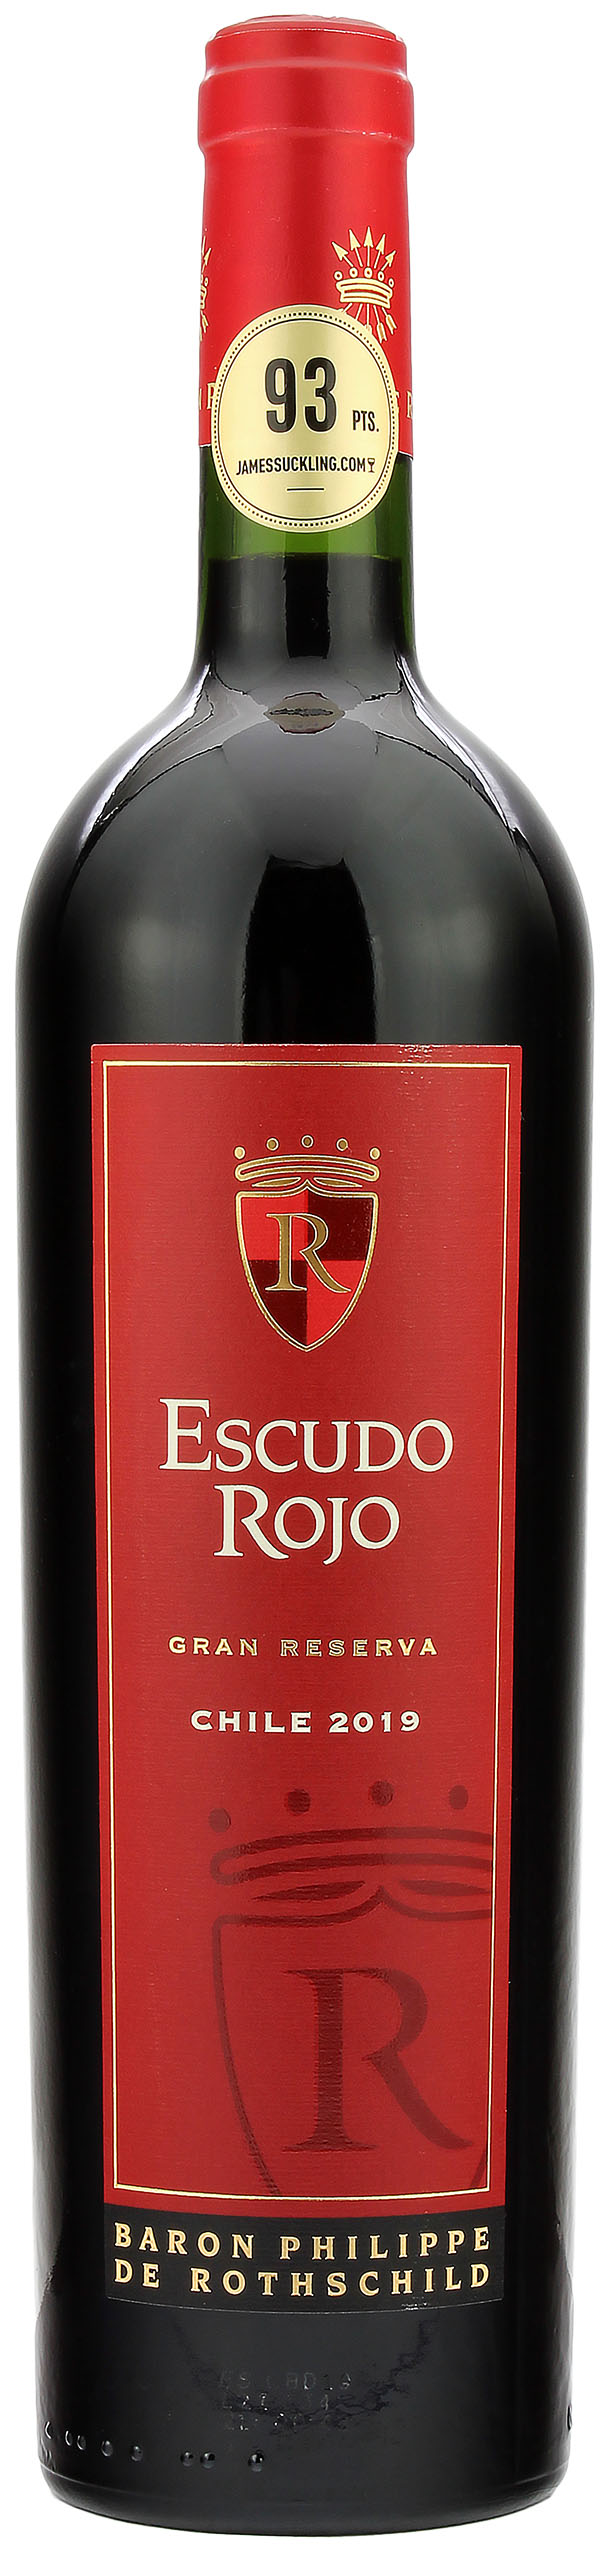 Escudo Rojo Gran Reserva Chile 2019 14.0% 0,75l